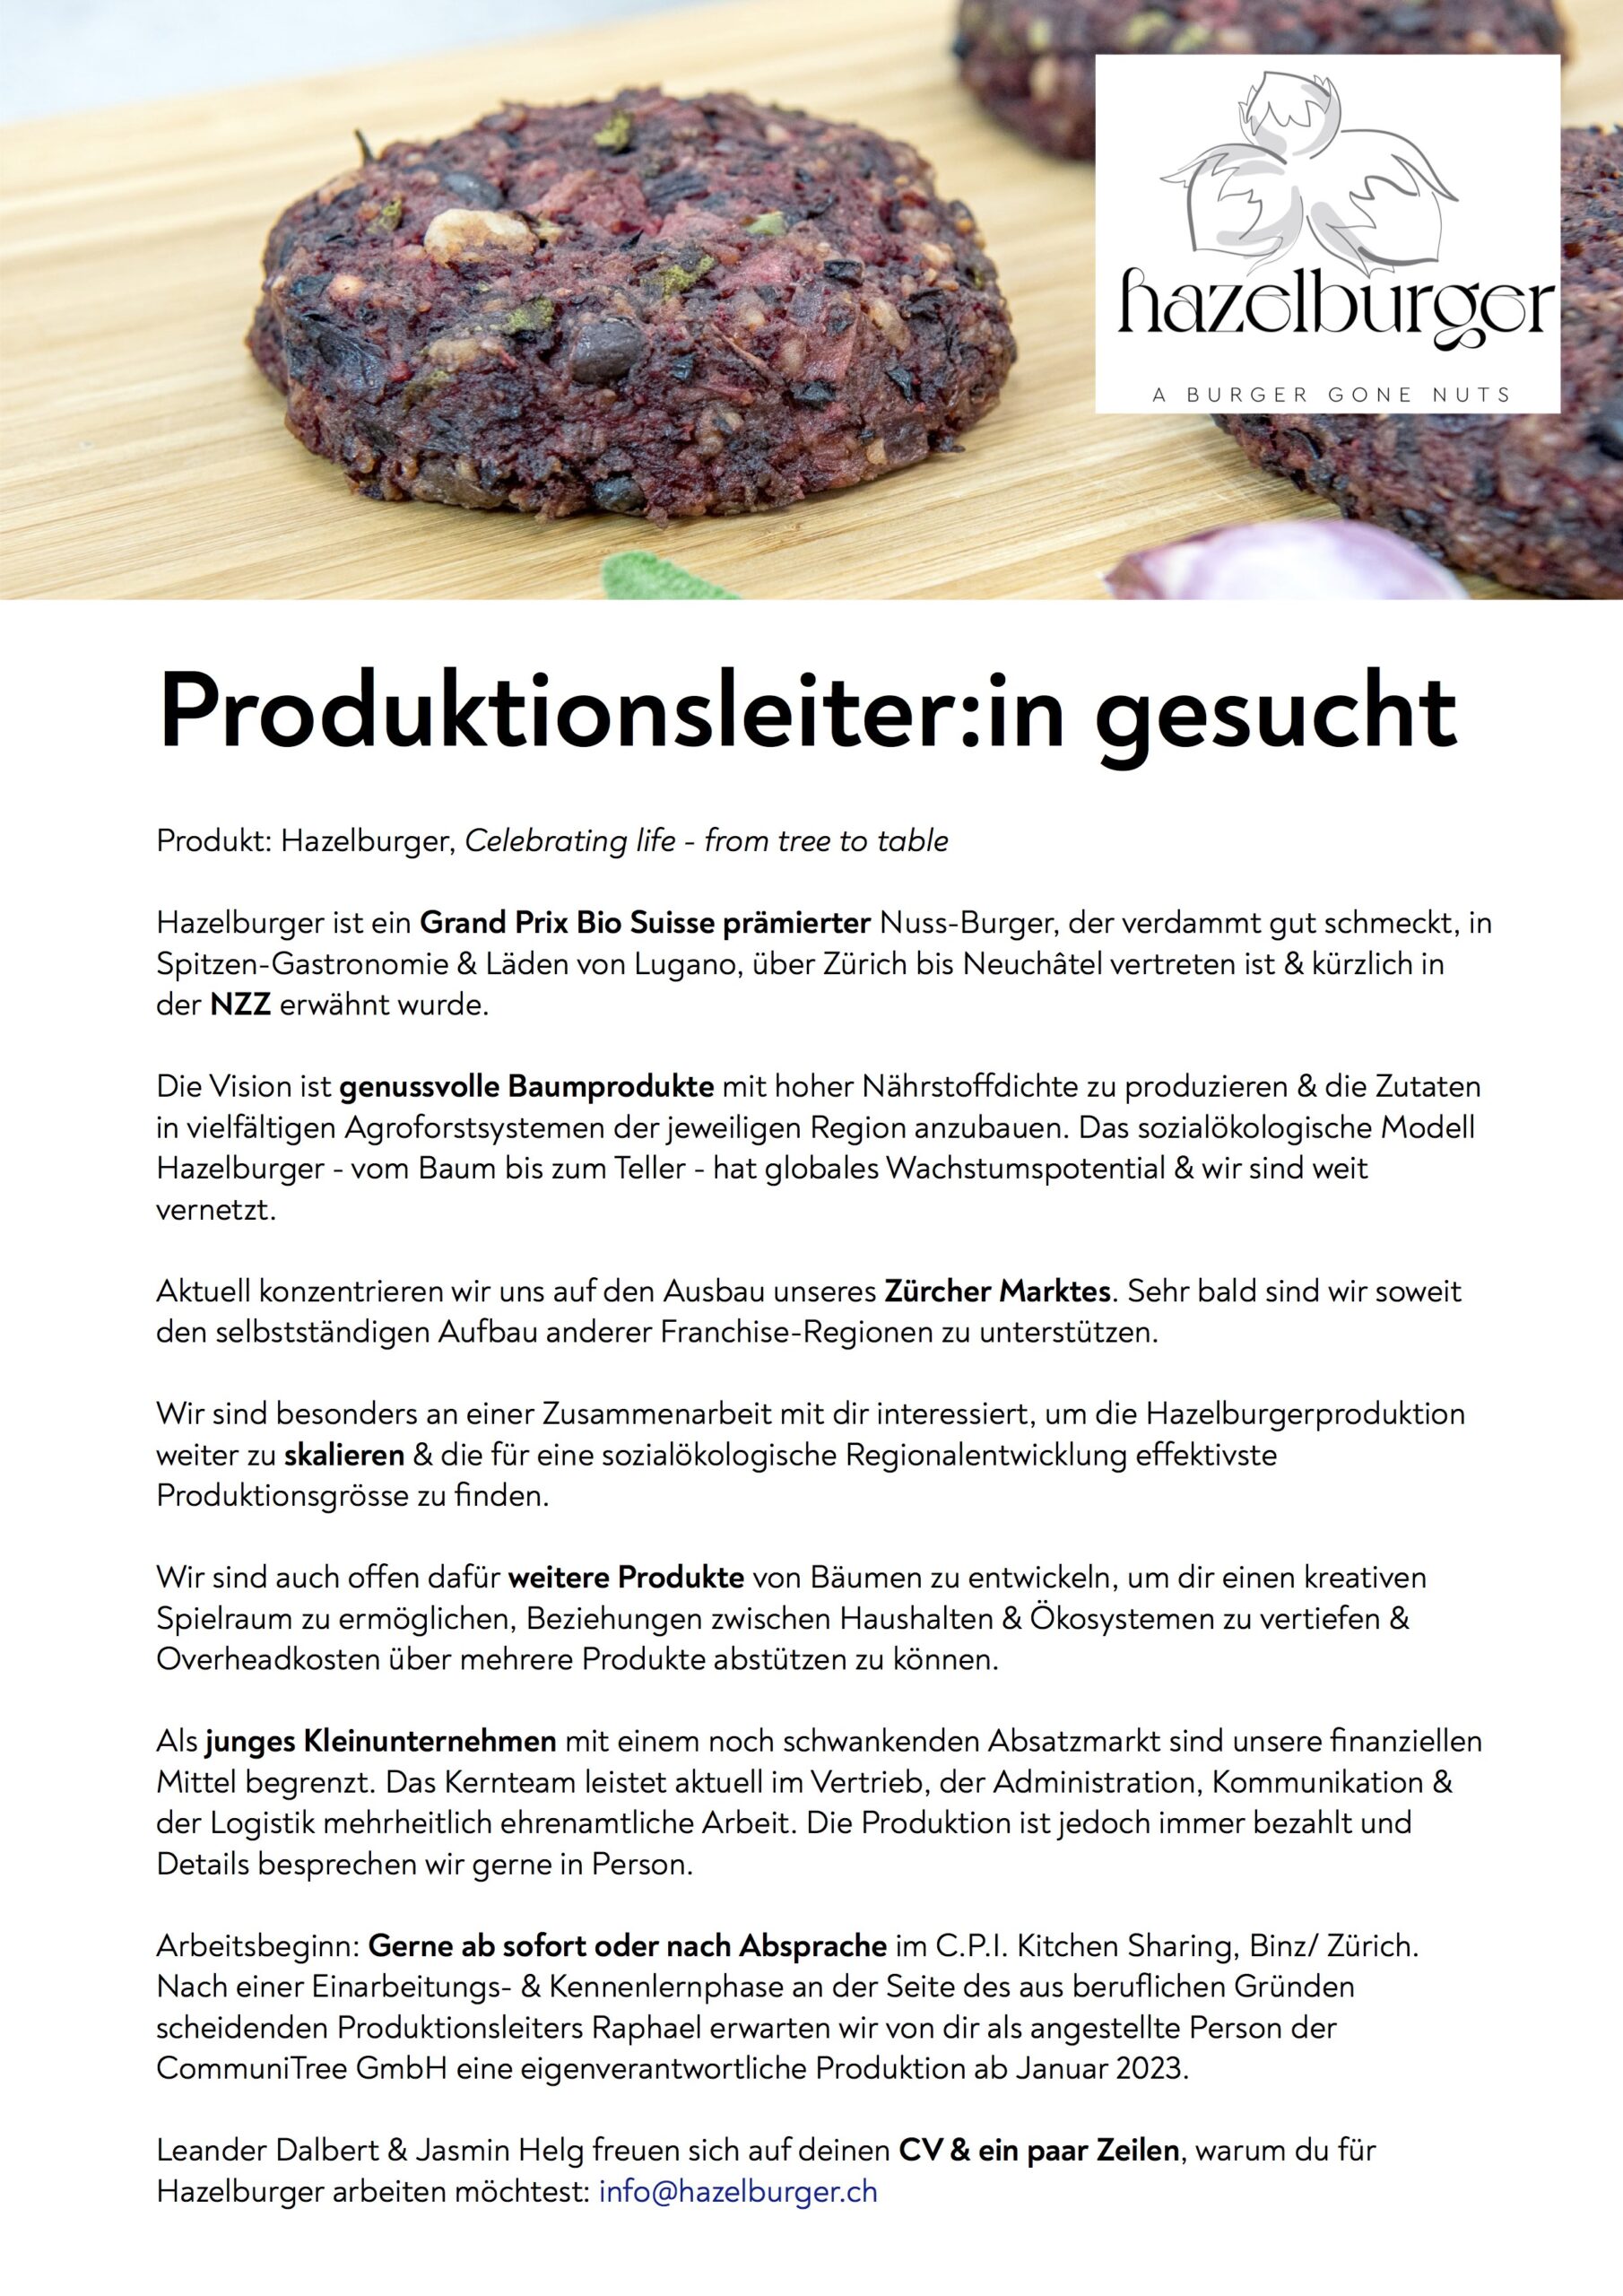 20221018_hazelburger_produktionsleiter_in